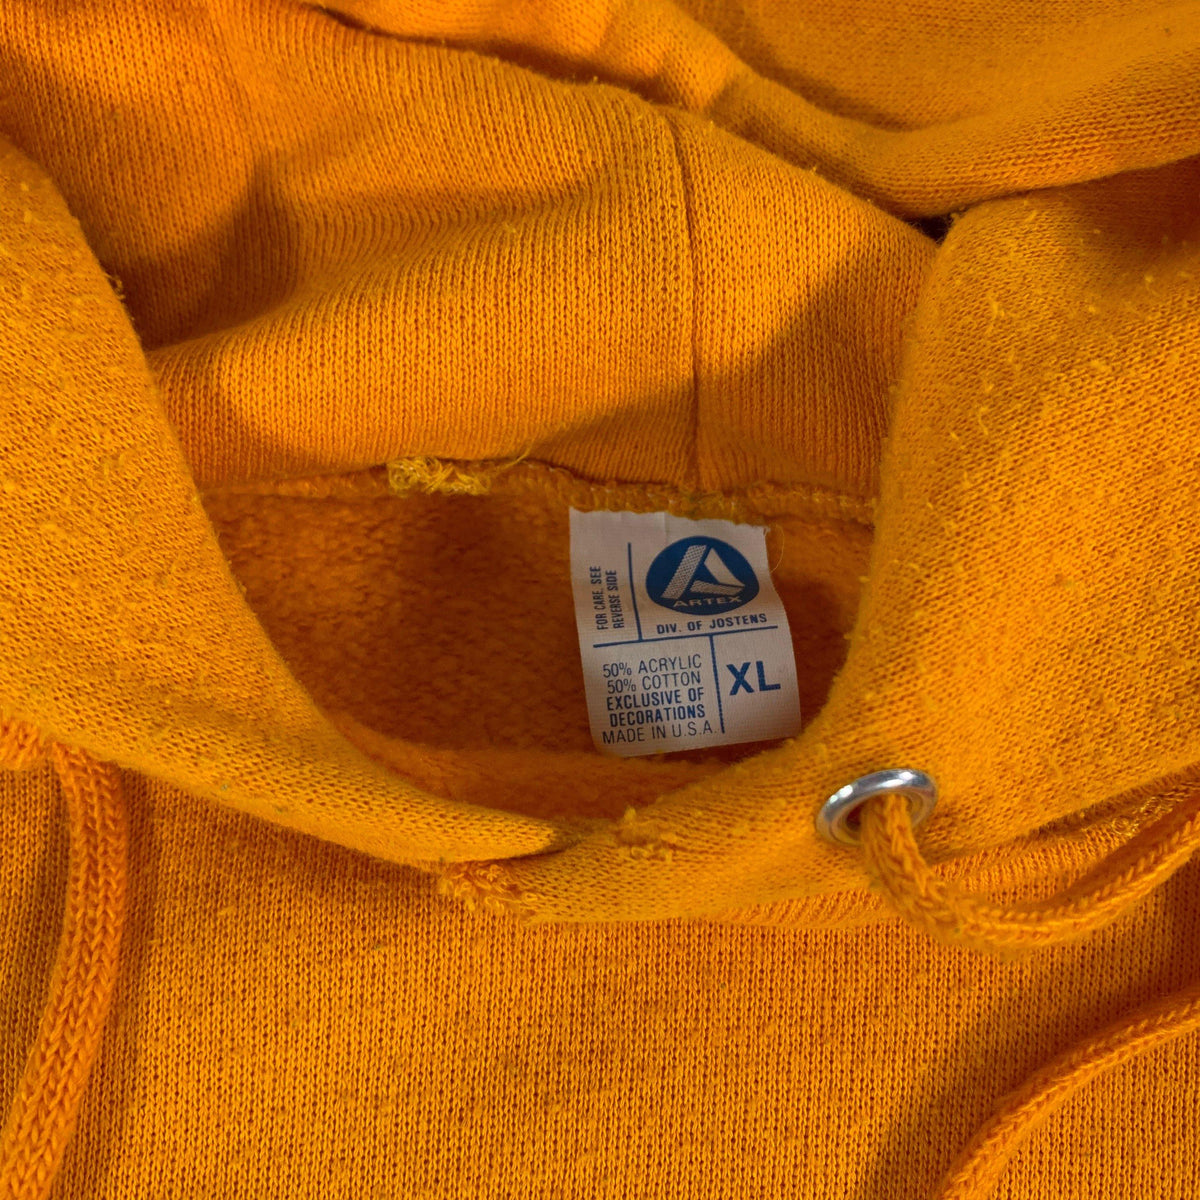 Vintage Michigan &quot;Wolverines&quot; Pullover Sweatshirt - jointcustodydc